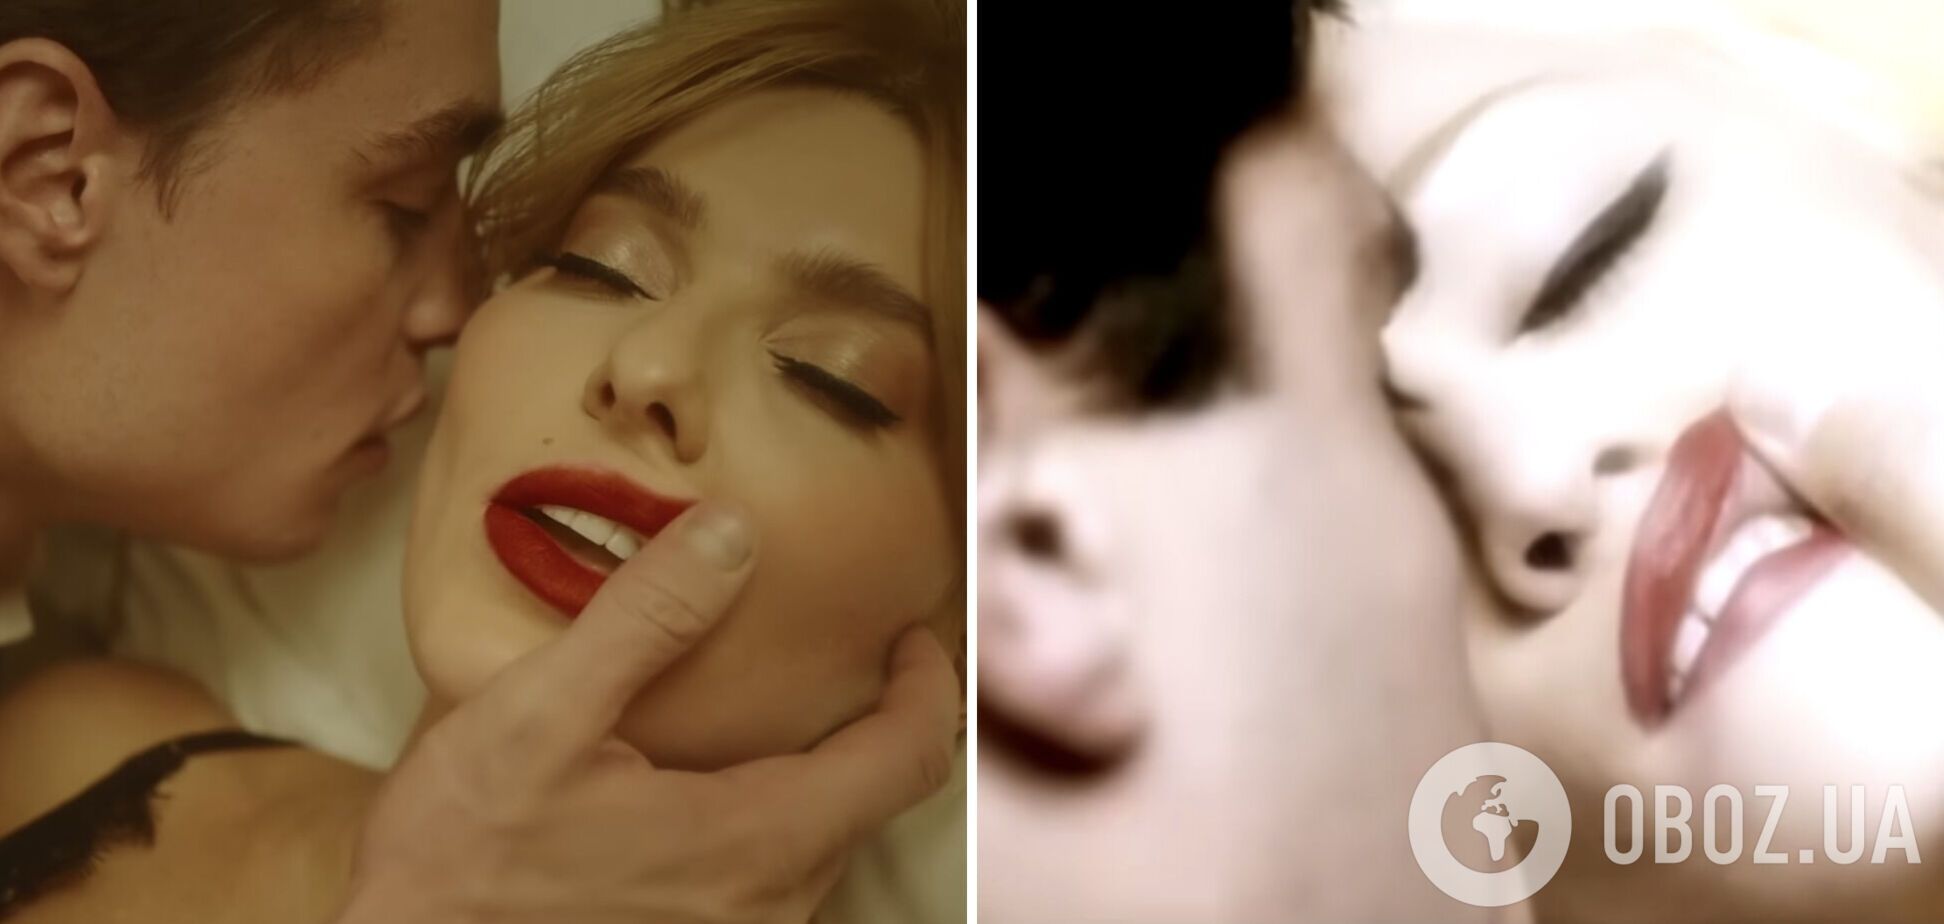 Українську співачку запідозрили в плагіаті кліпів Мадонни і Лани Дель Рей. Відео